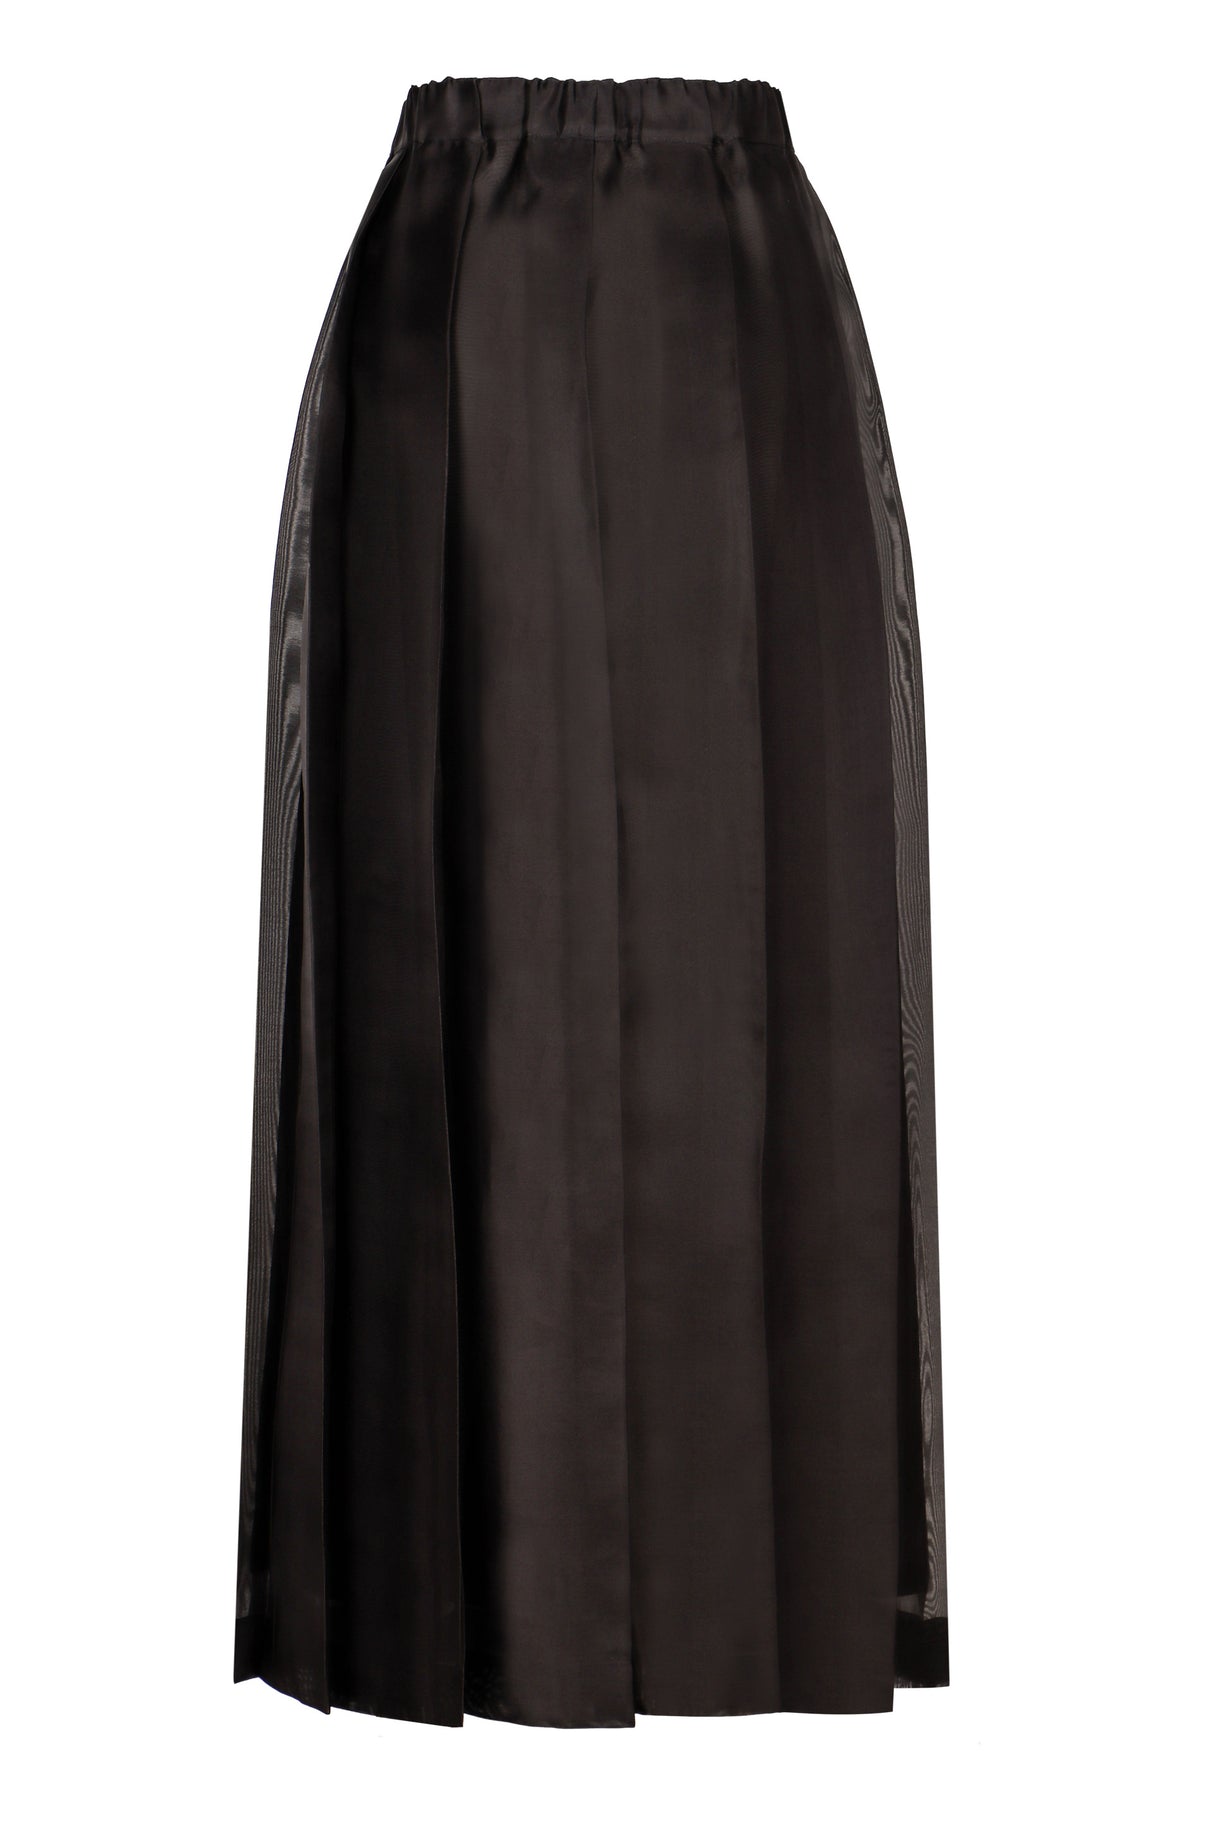 تنورة ميدي سوداء من الحرير بخصر مطاطي وتفاصيل مطوية للنساء